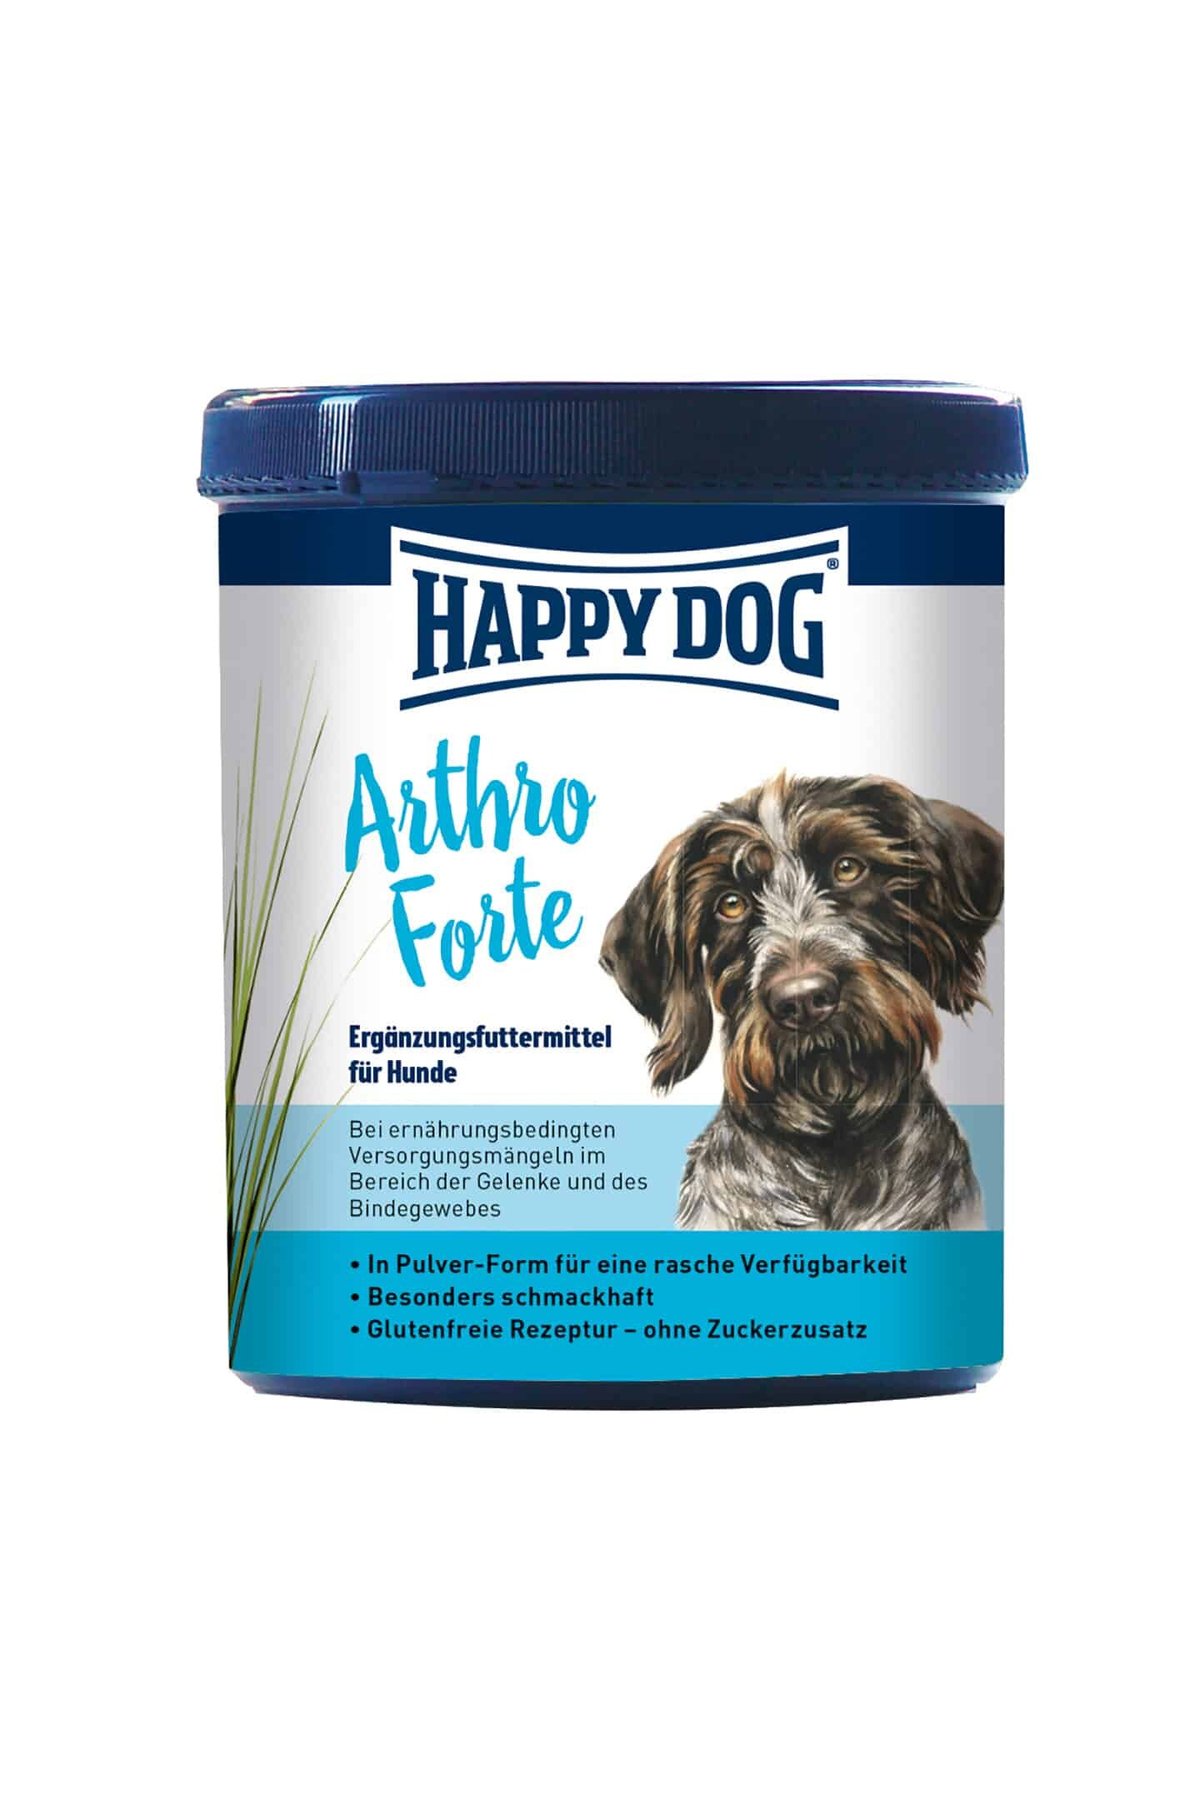 Happy Dog ArthroForte (Хэппи Дог Артрофорте) - Кормовая добавка для укрепления суставов у собак 200 гр